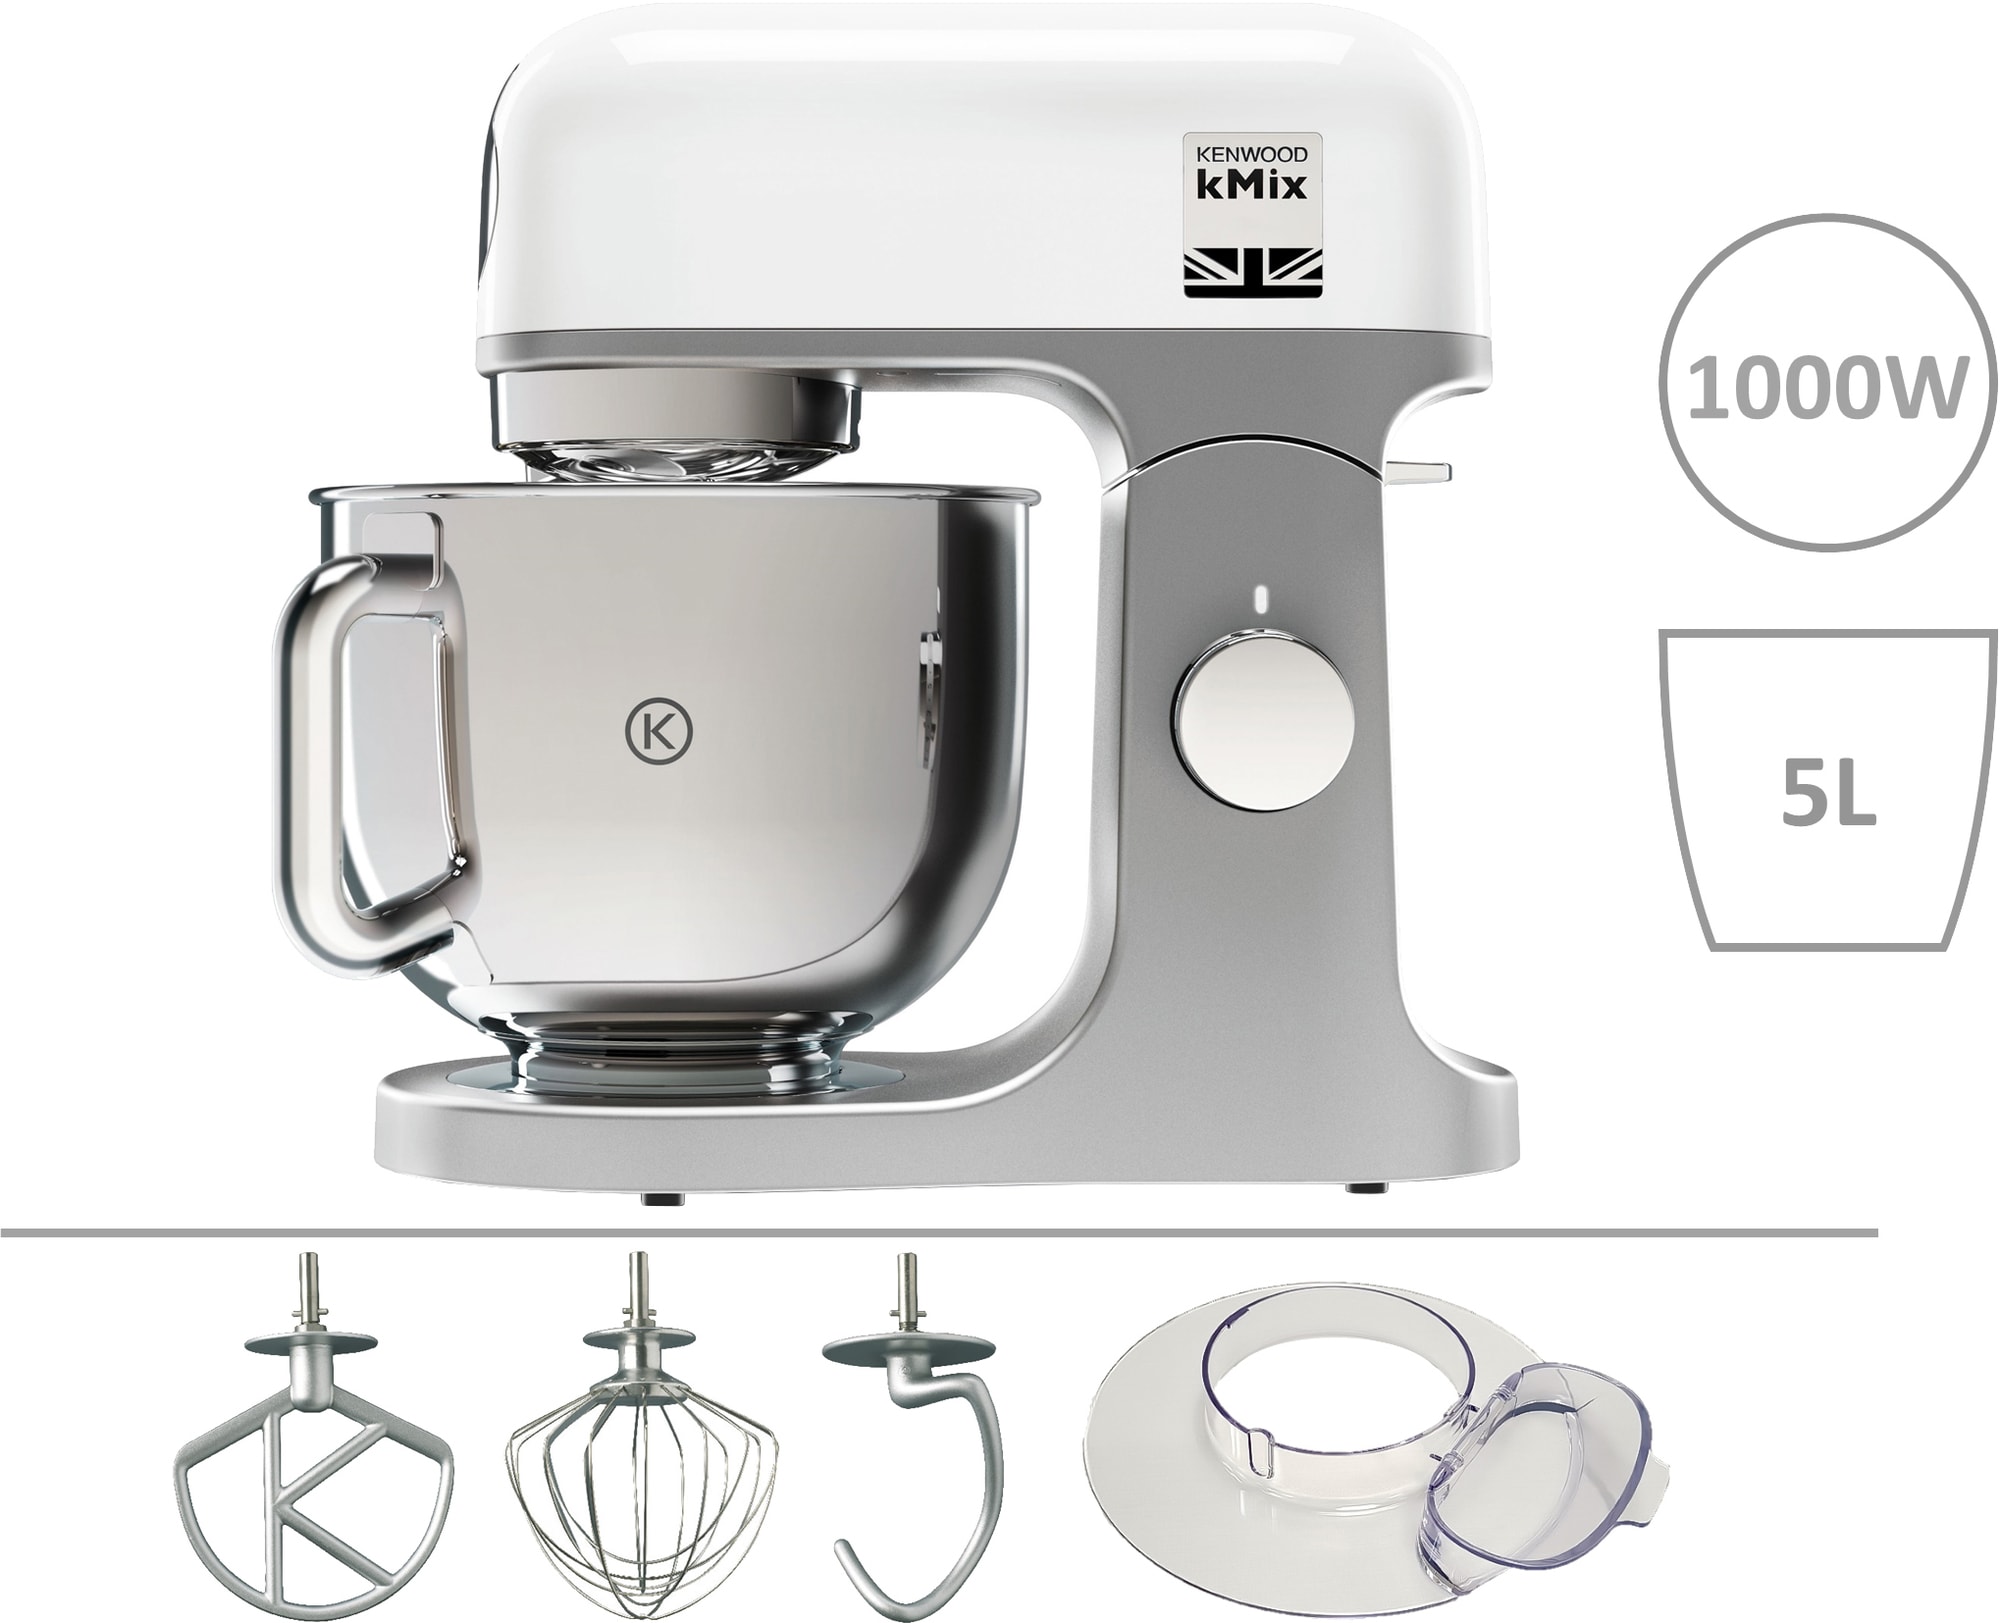 Kenwood Kmix kjøkkenmaskin KMX750 (hvit) - Kjøkkenapparater - Elkjøp